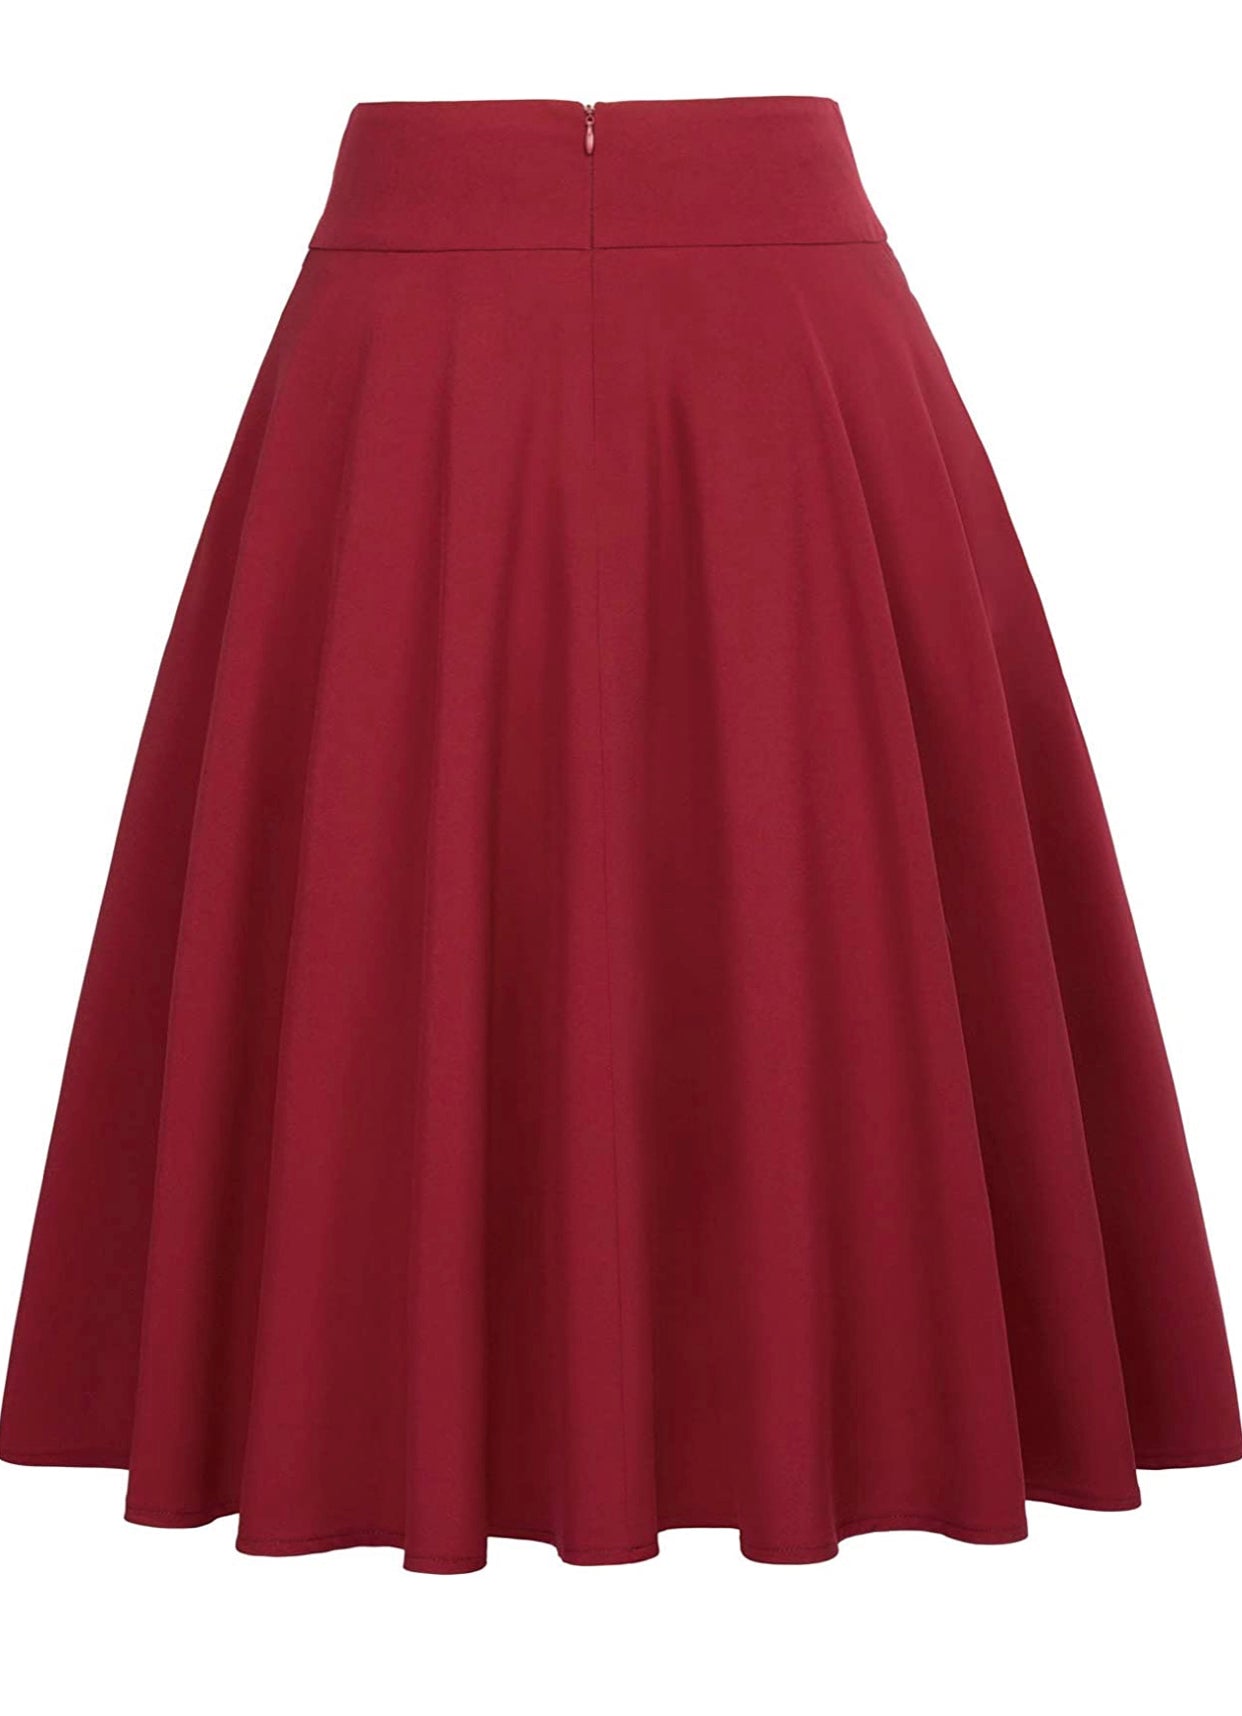 High Waist A-Line Skirt, Size Medium - NEW